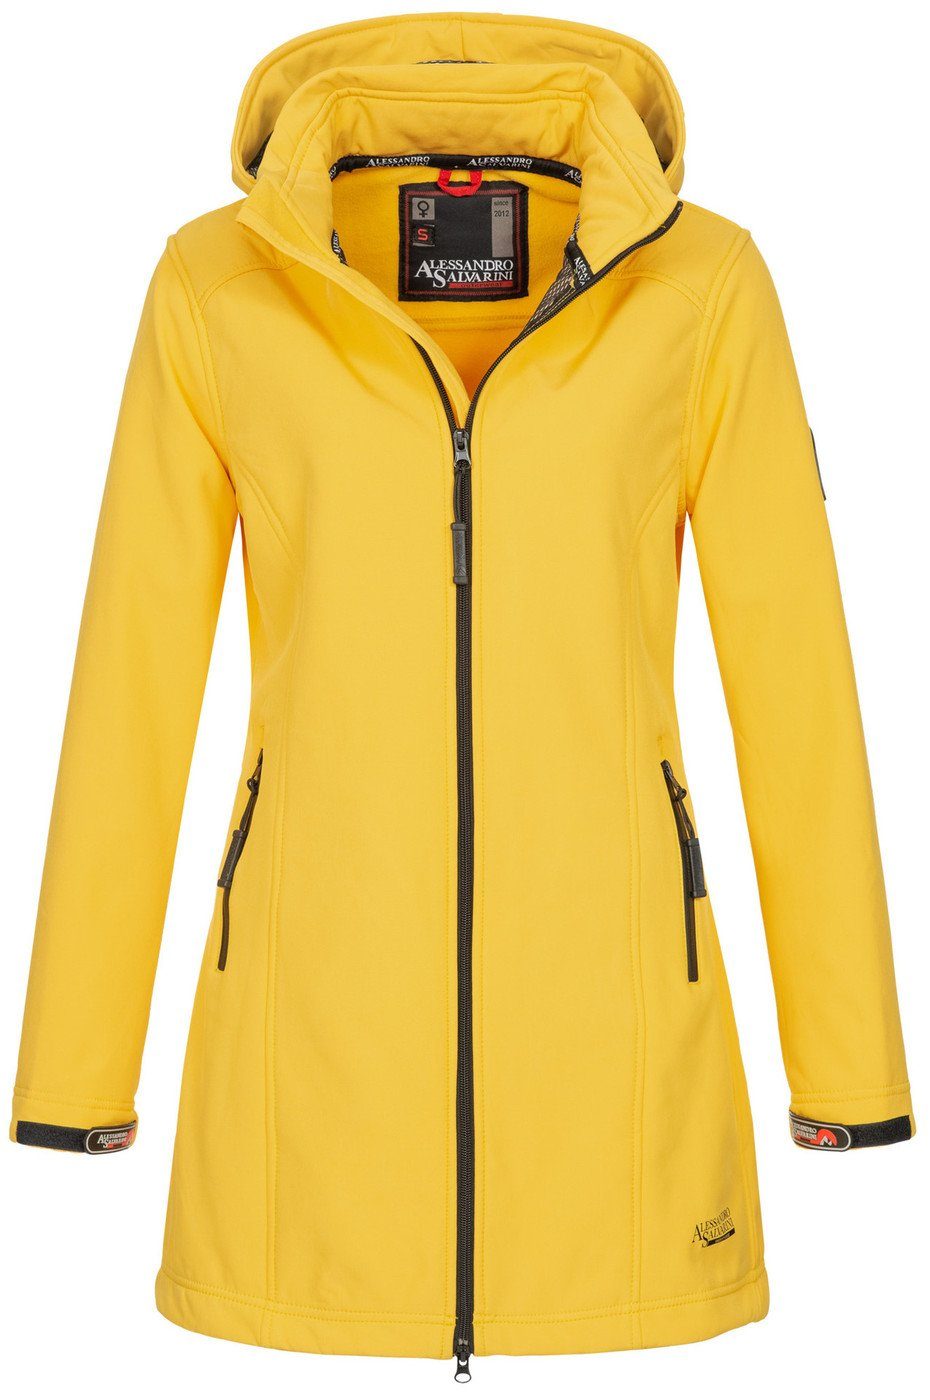 Gelbe Jacke online kaufen | OTTO